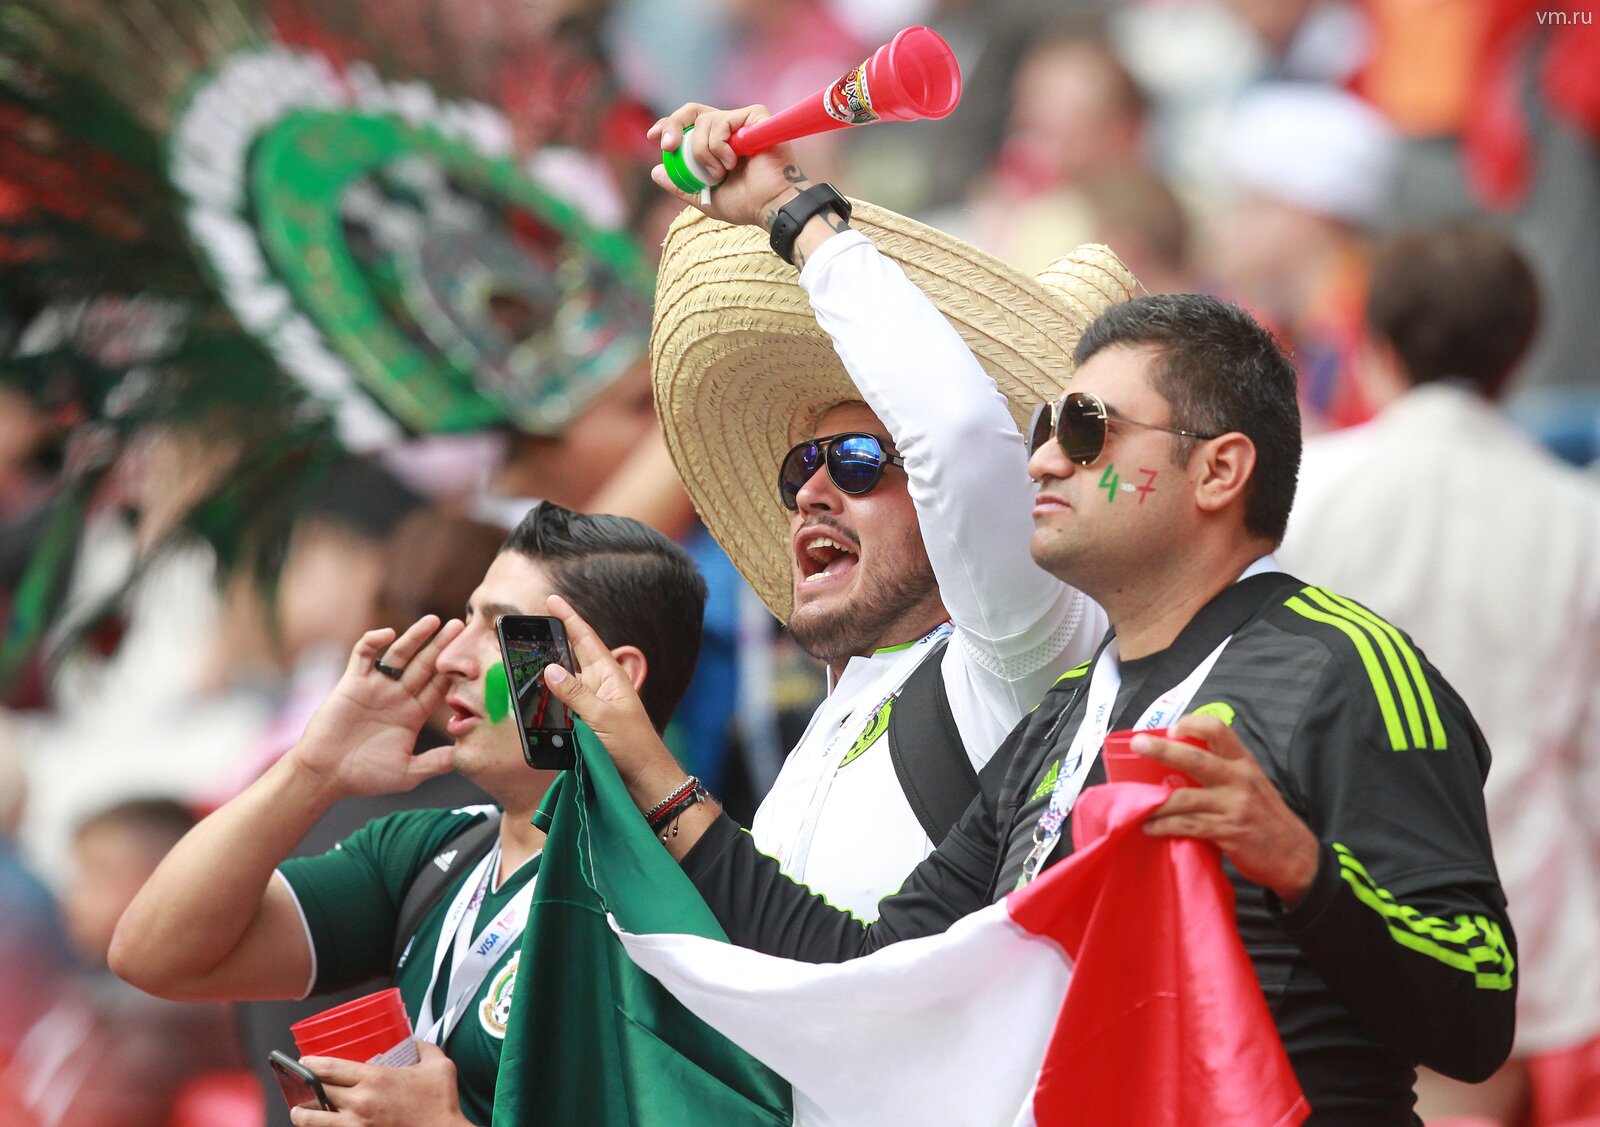 В Москве перуанец украл дорогостоящие билеты у мексиканца, чтобы сходить на футбол